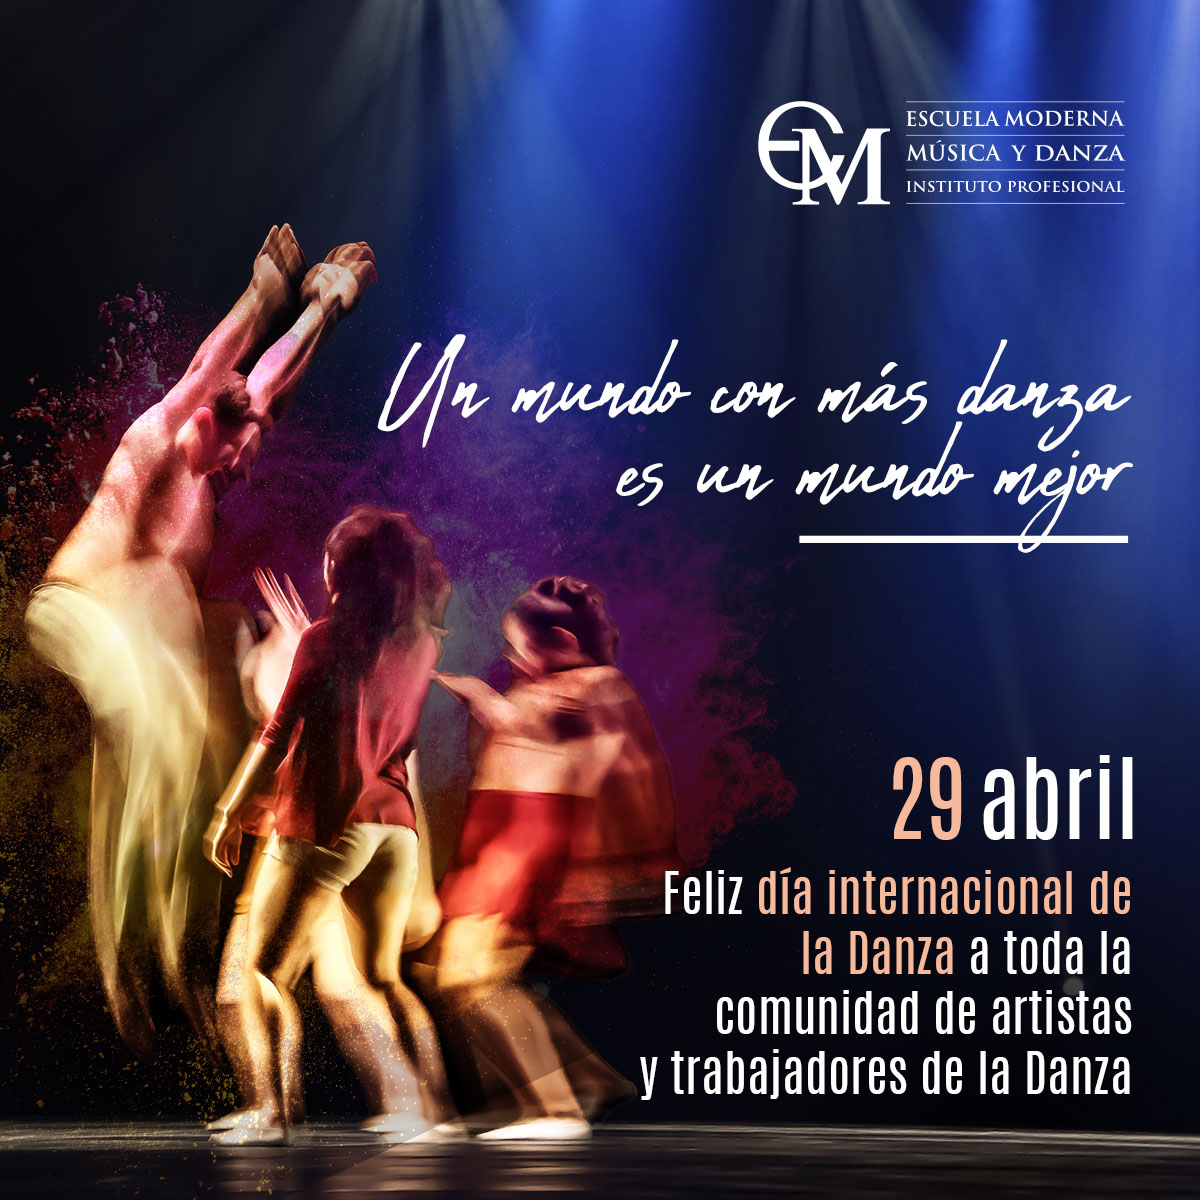 Feliz Día Internacional de la Danza a toda nuestra comunidad, a los artistas, bailarines y trabajadores de este lindo arte que nos hace comunicar a través de nuestros cuerpos y movimientos ✨ #EscuelaModerna #Danza